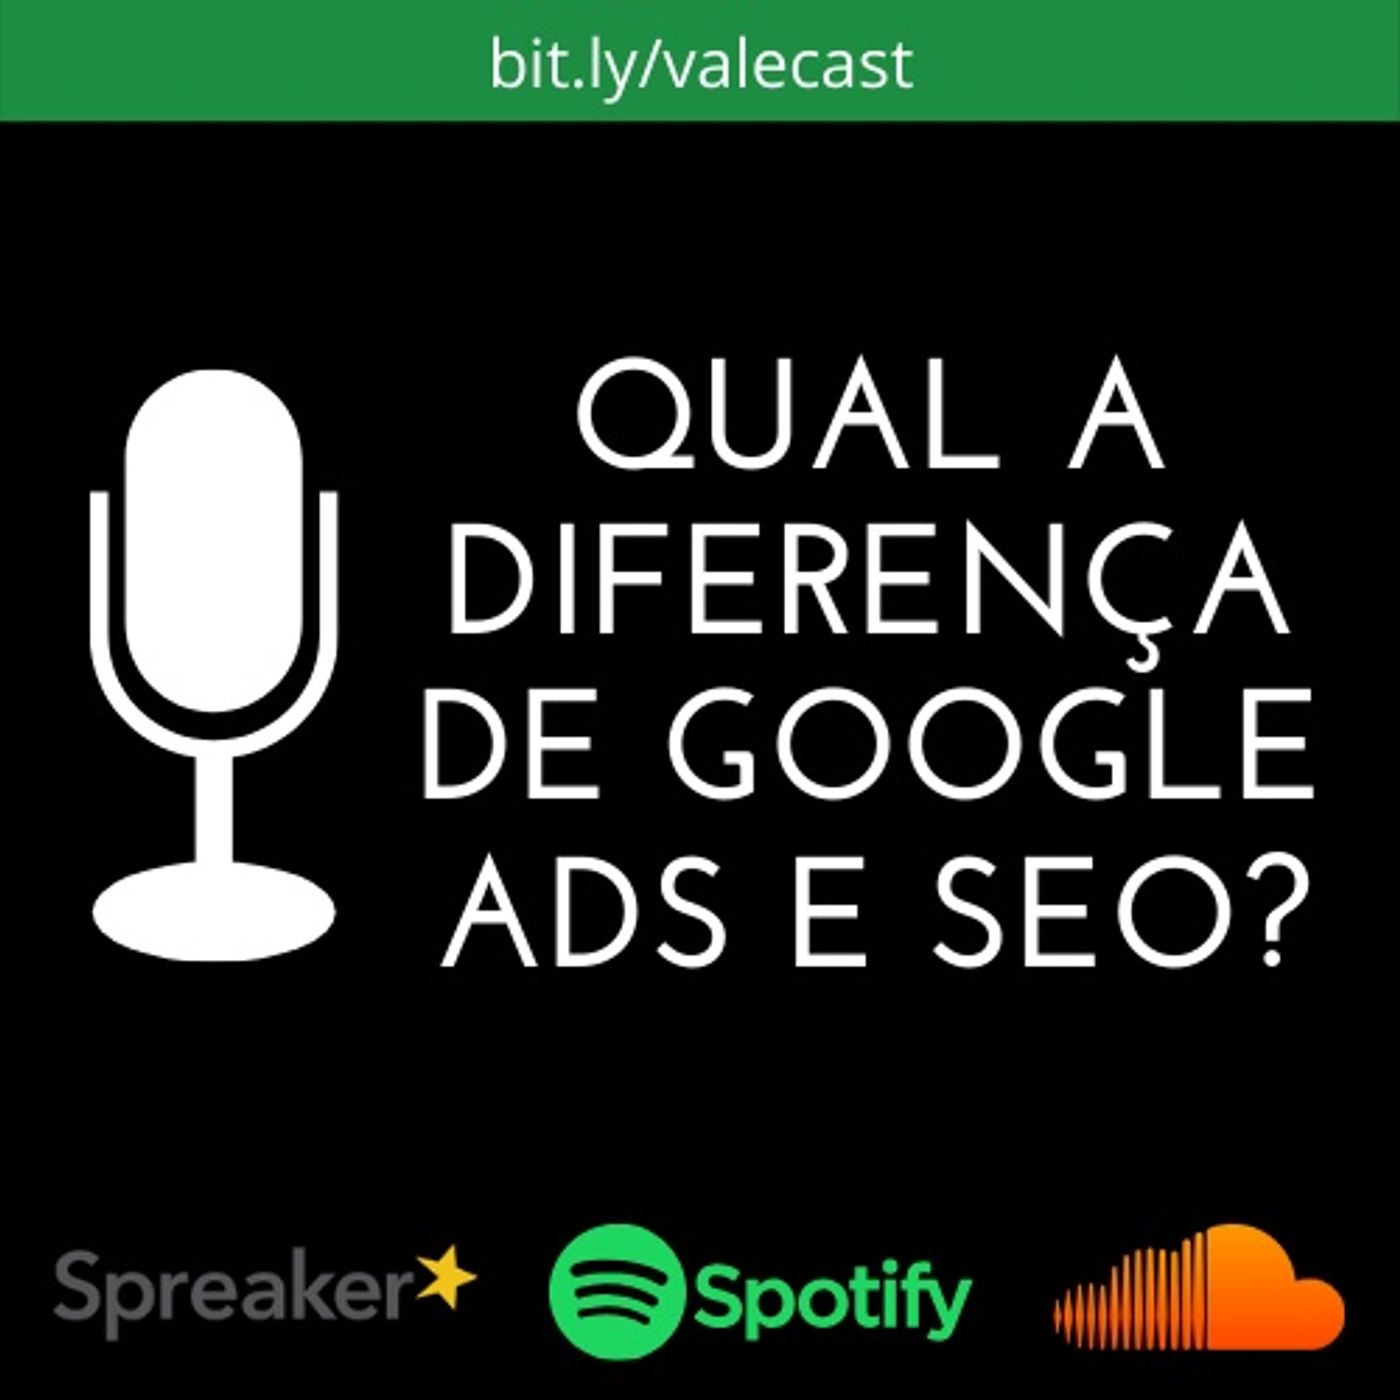 Qual a diferença entre Google Ads e SEO?